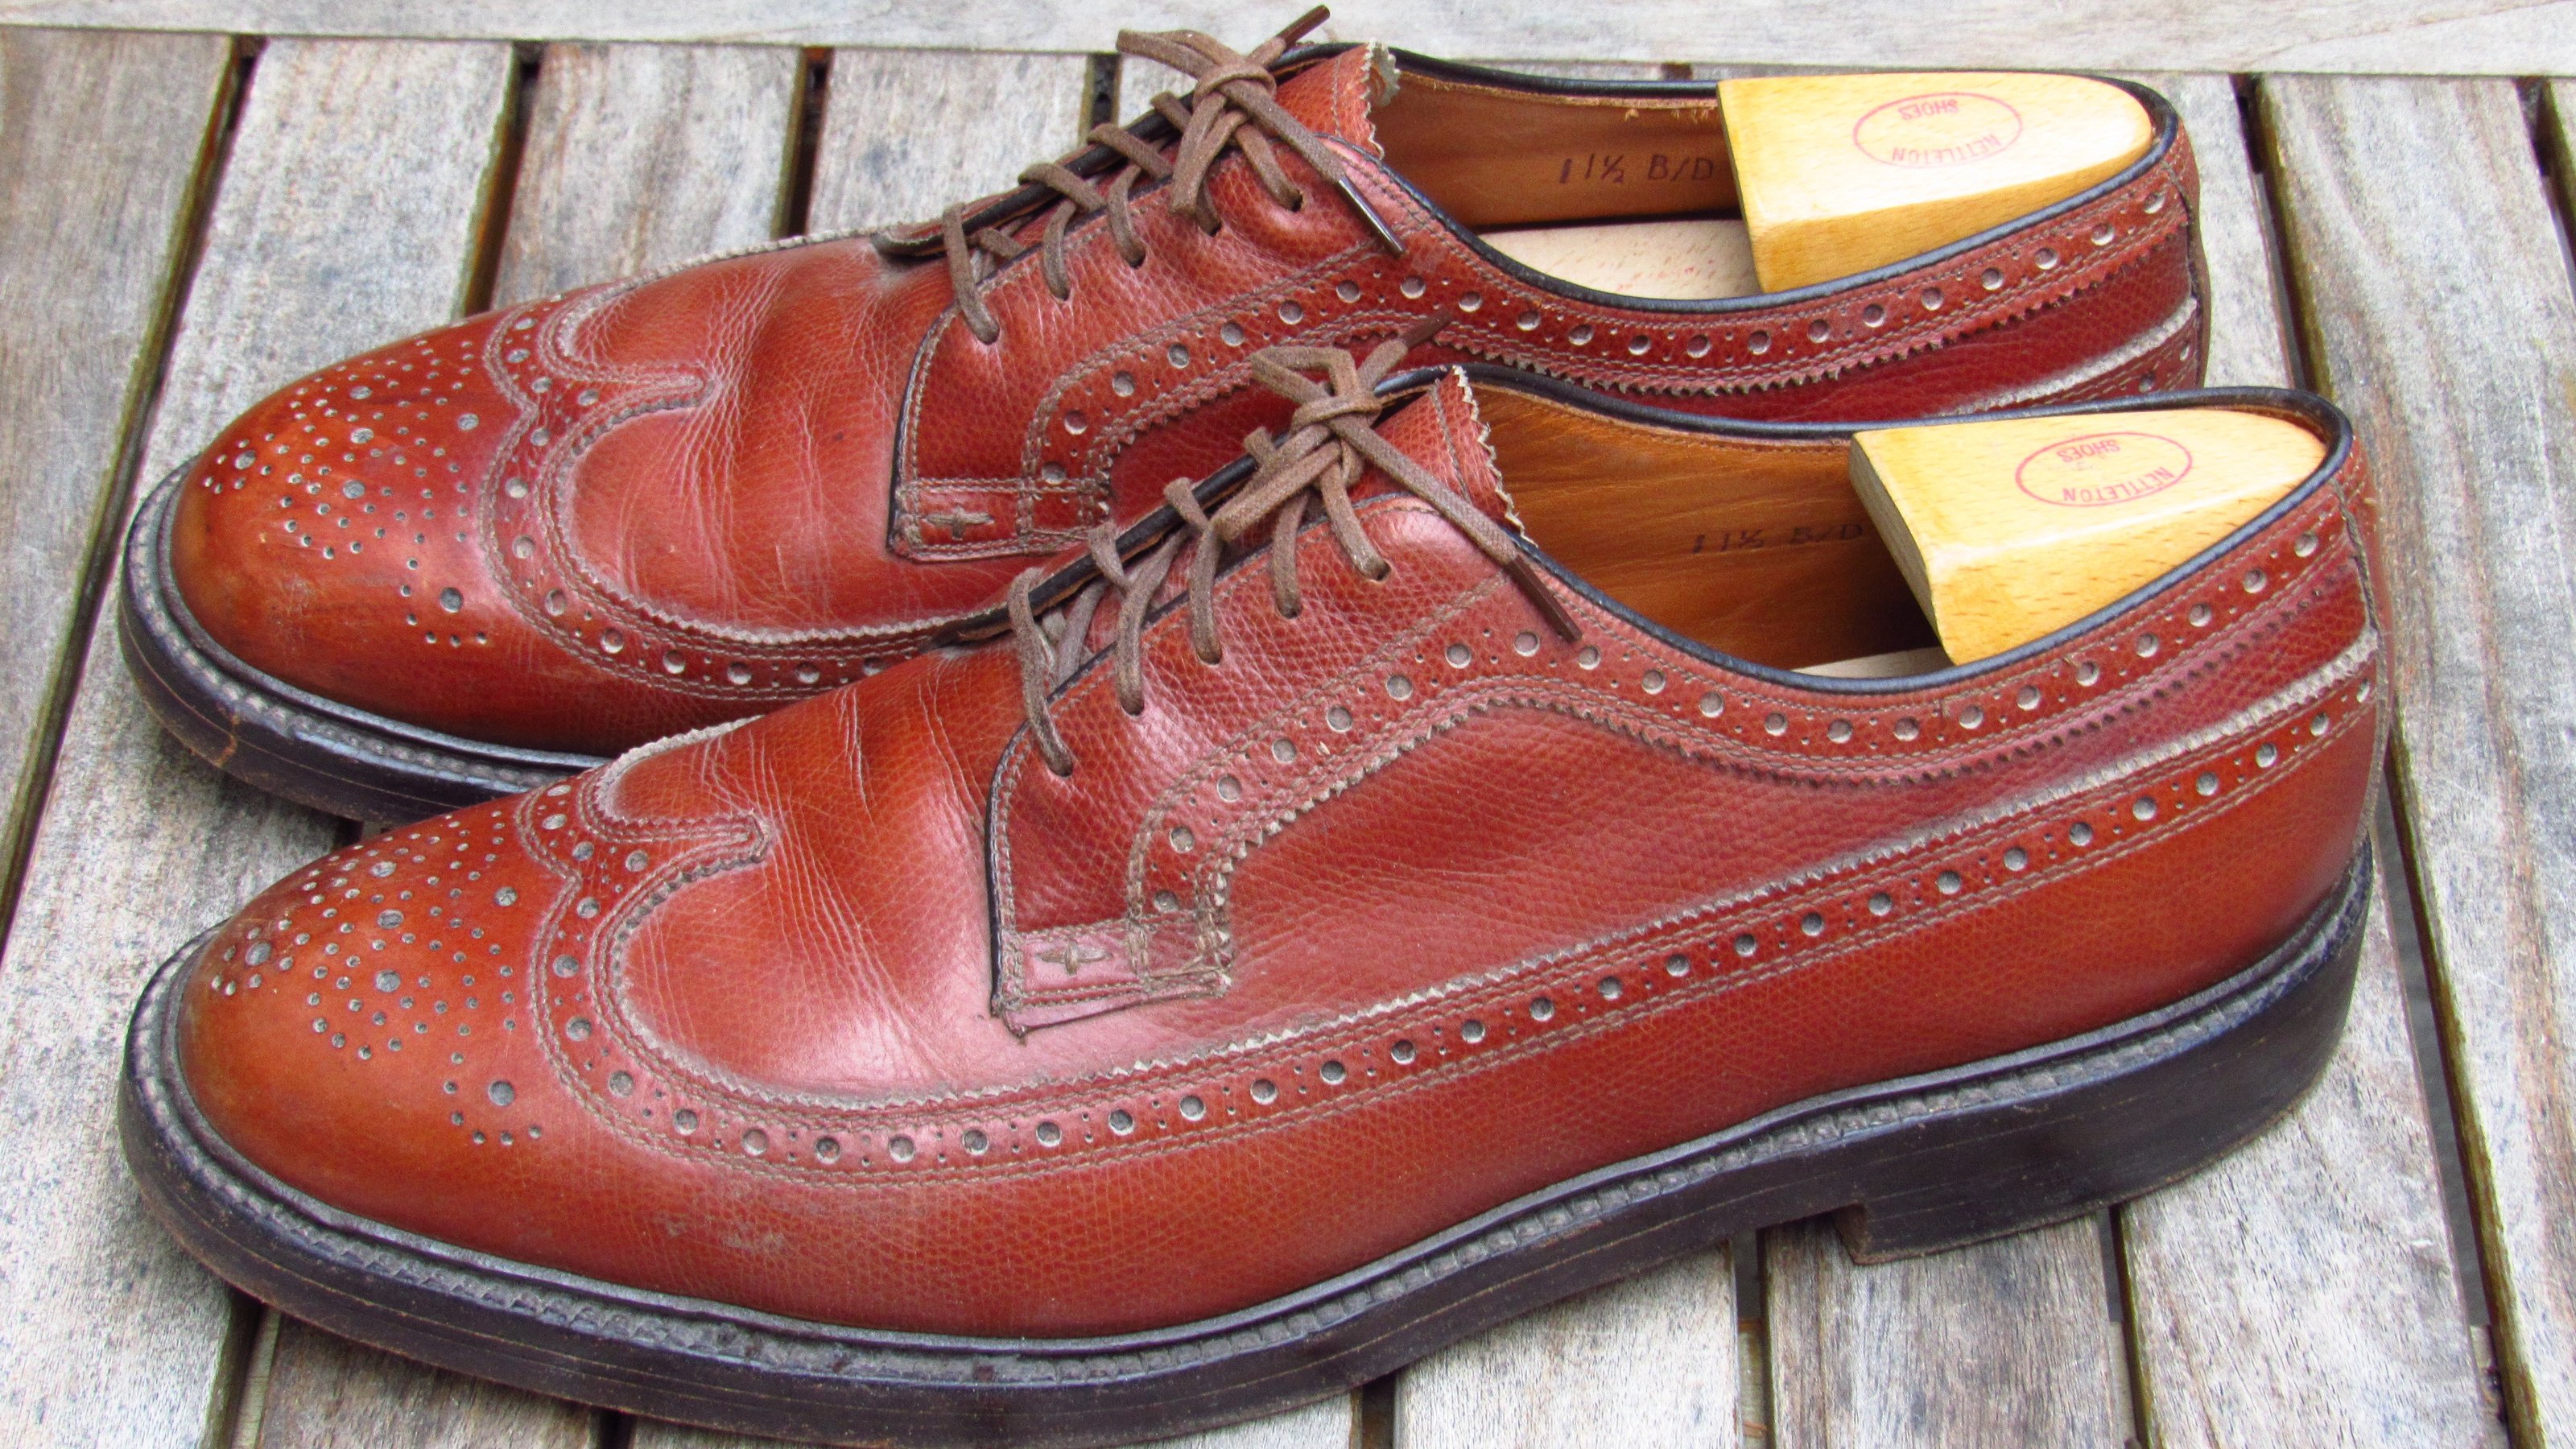 Old vintage shoes